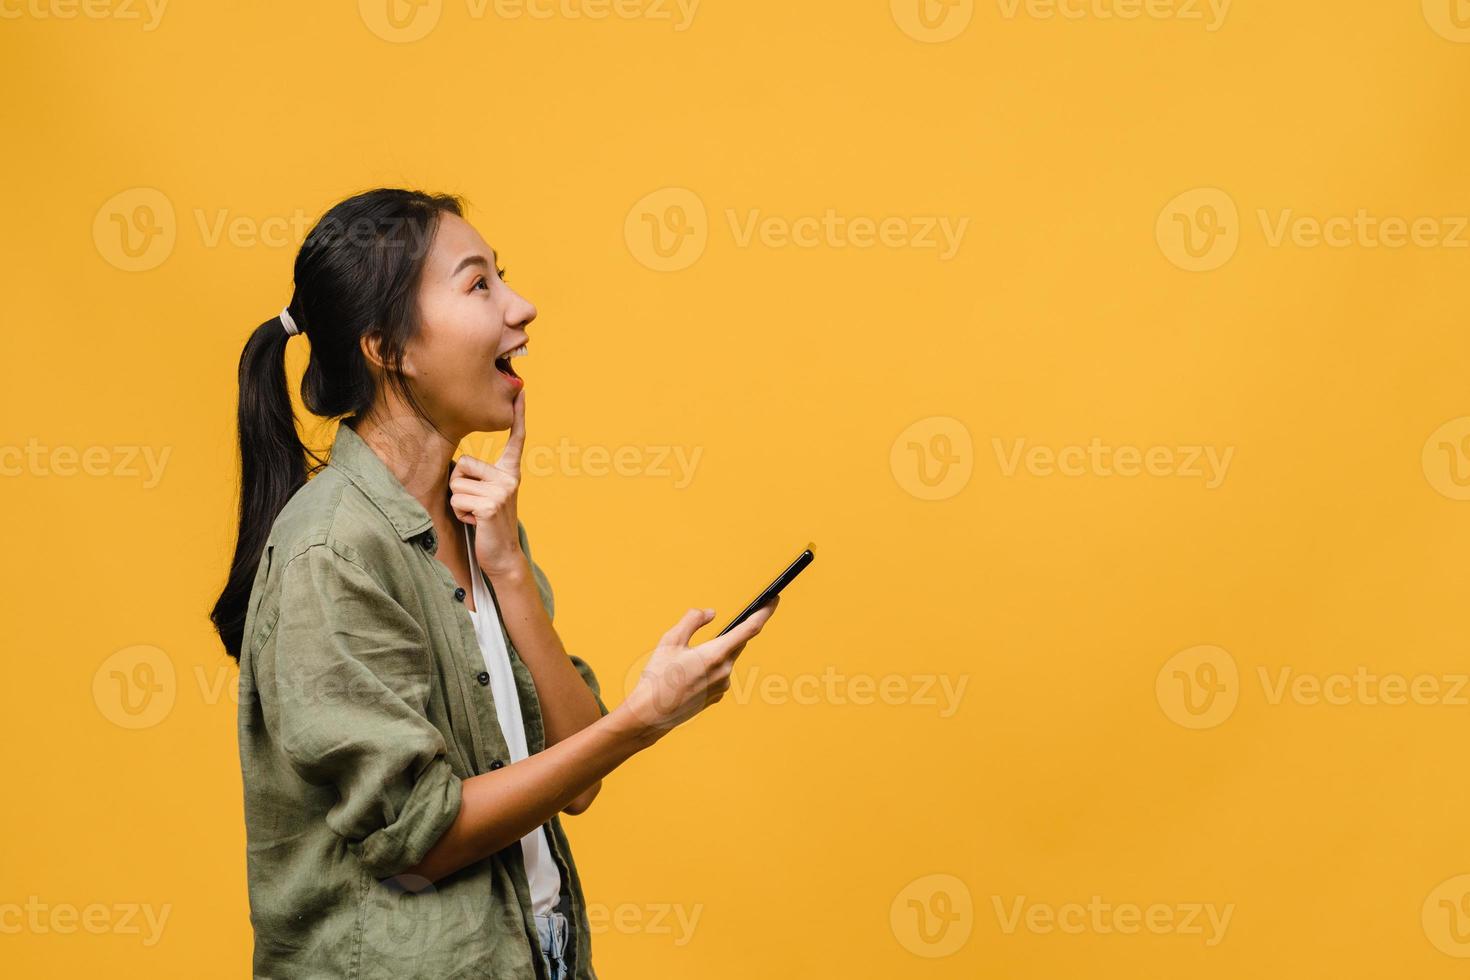 jonge aziatische dame die telefoon gebruikt met positieve uitdrukking, breed glimlacht, gekleed in casual kleding die geluk voelt en geïsoleerd op gele achtergrond staat. gelukkige schattige blije vrouw verheugt zich over succes. foto